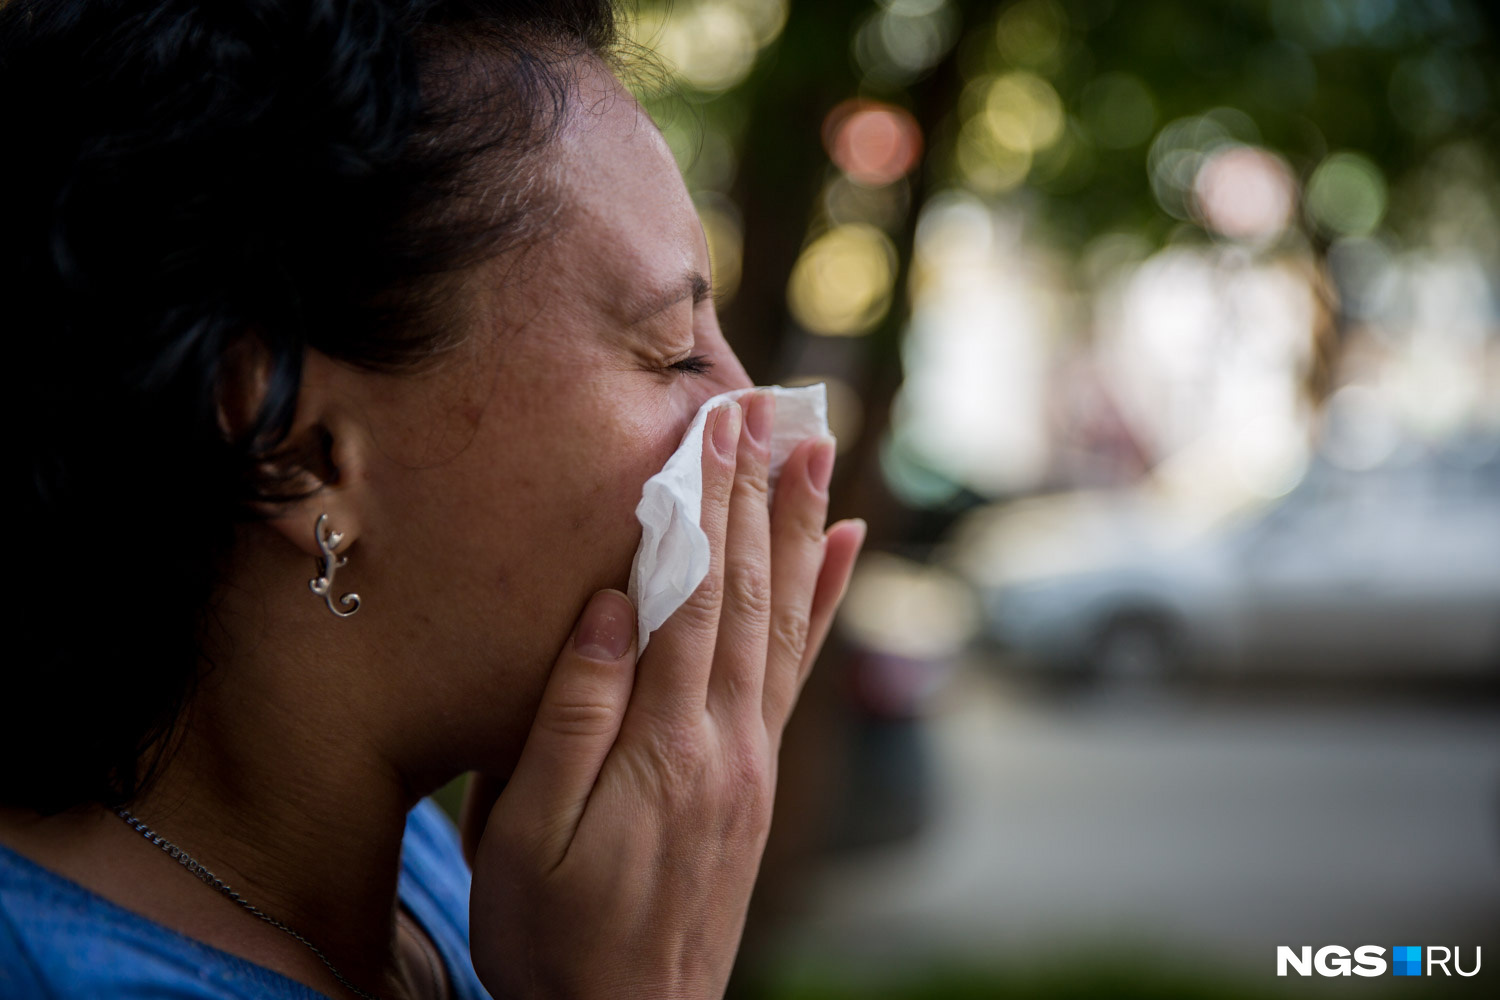 Постоянный насморк и частые простуды — поводы провериться у аллерголога